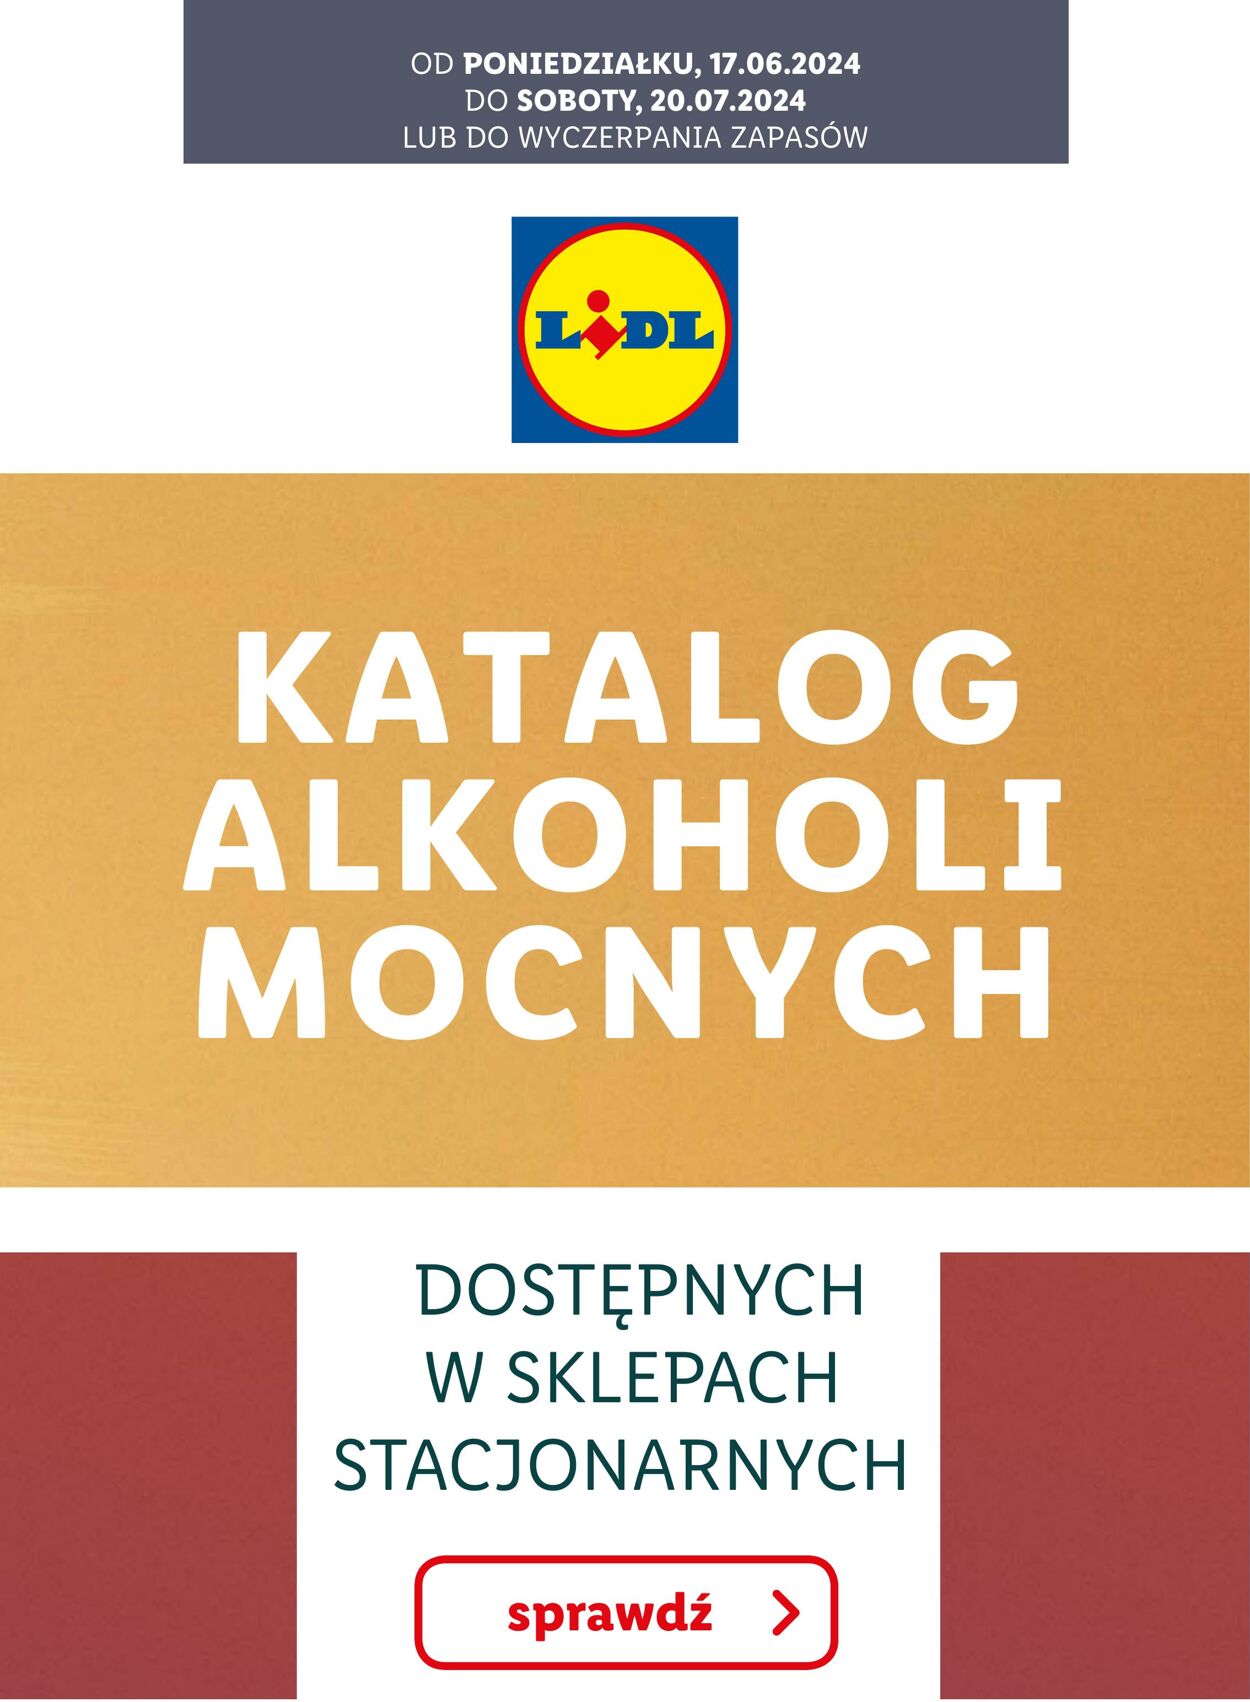 Gazetka Lidl - KATALOG ALKOHOLI MOCNYCH 17 cze, 2024 - 20 lip, 2024